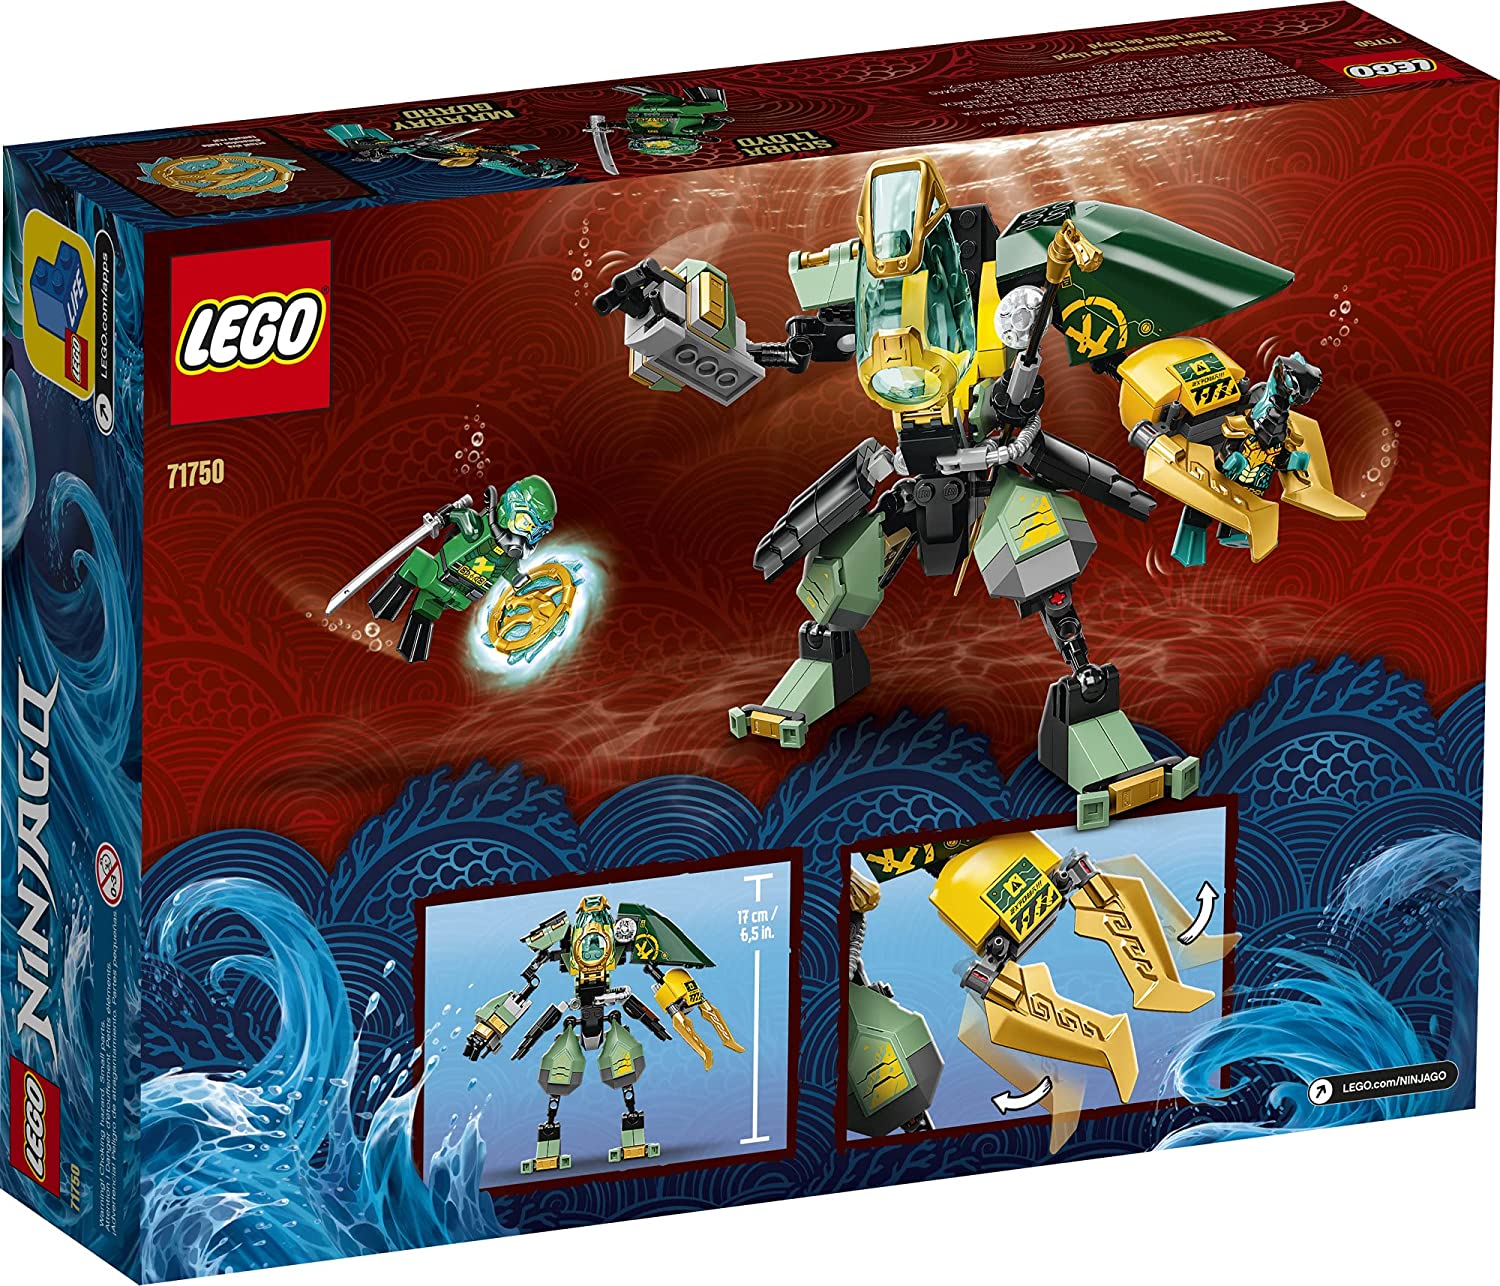 LEGO: Ninjago - Lloyd's Hydro Mech